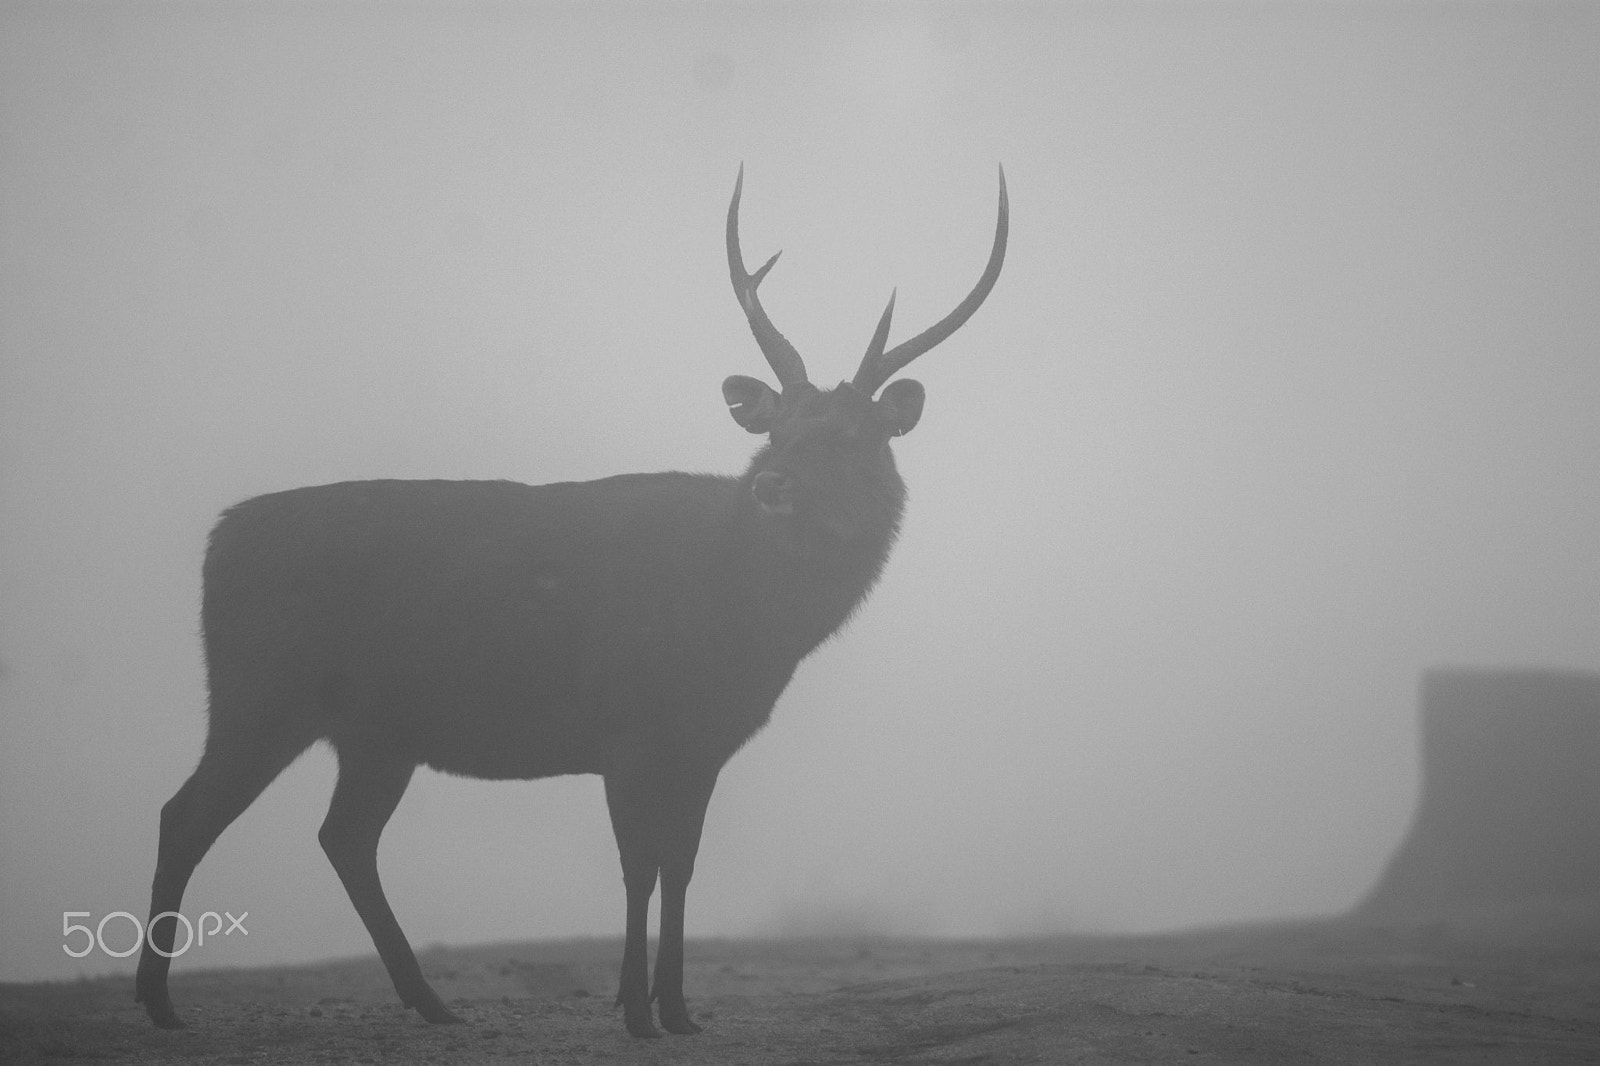 Nikon D7100 sample photo. Sambar deer photography